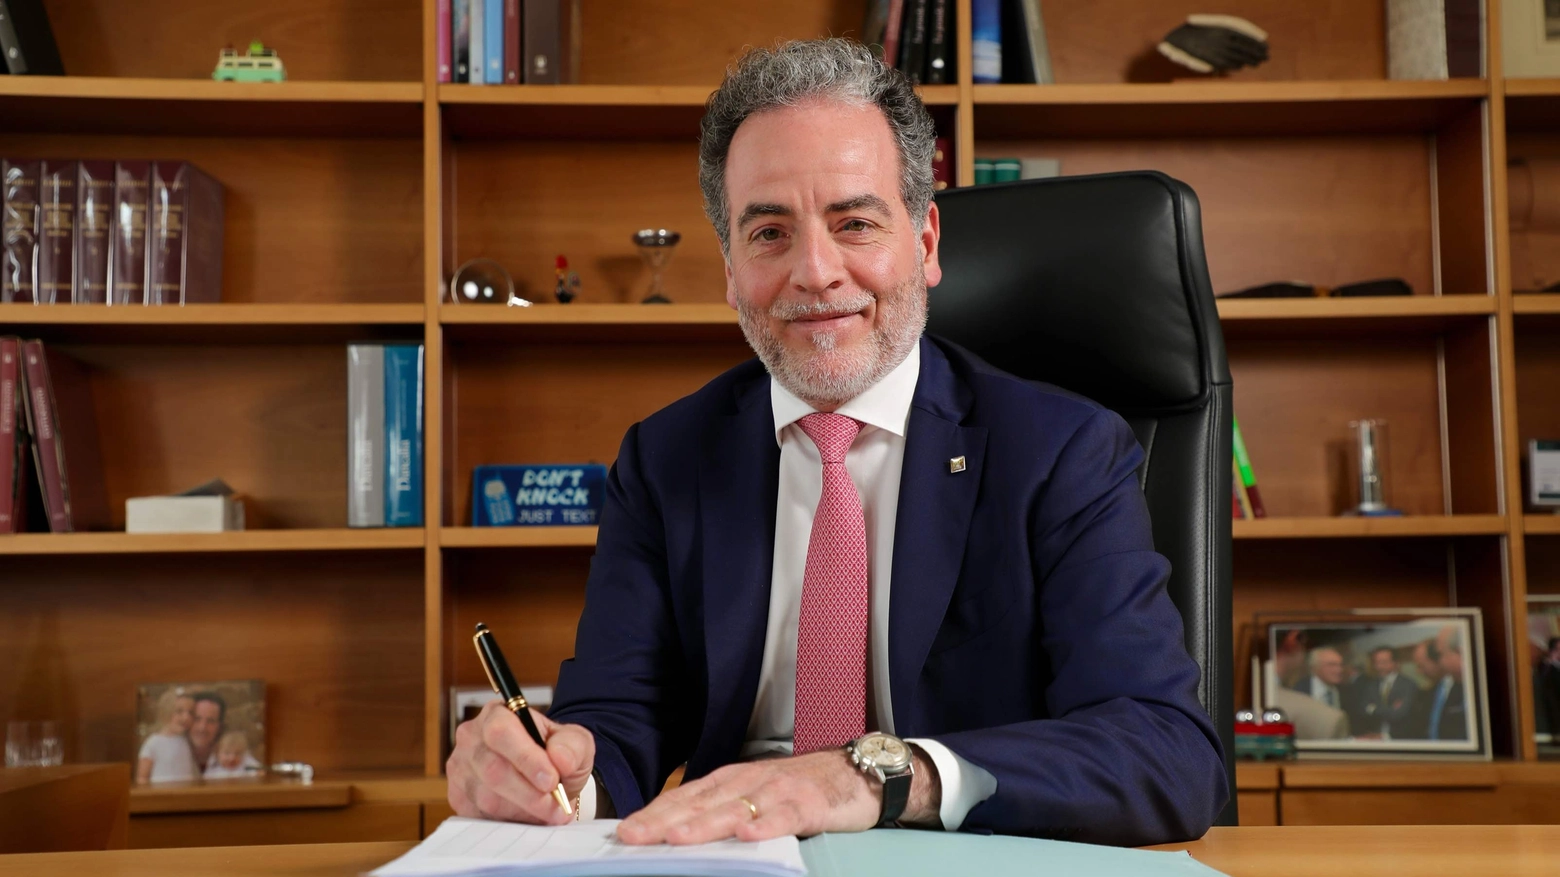 Tito Nocentini, direttore regionale Banca Intesa Sanpaolo: “Necessaria la politica delle infrastrutture”. La Multiutility, la Borsa e le altre realtà